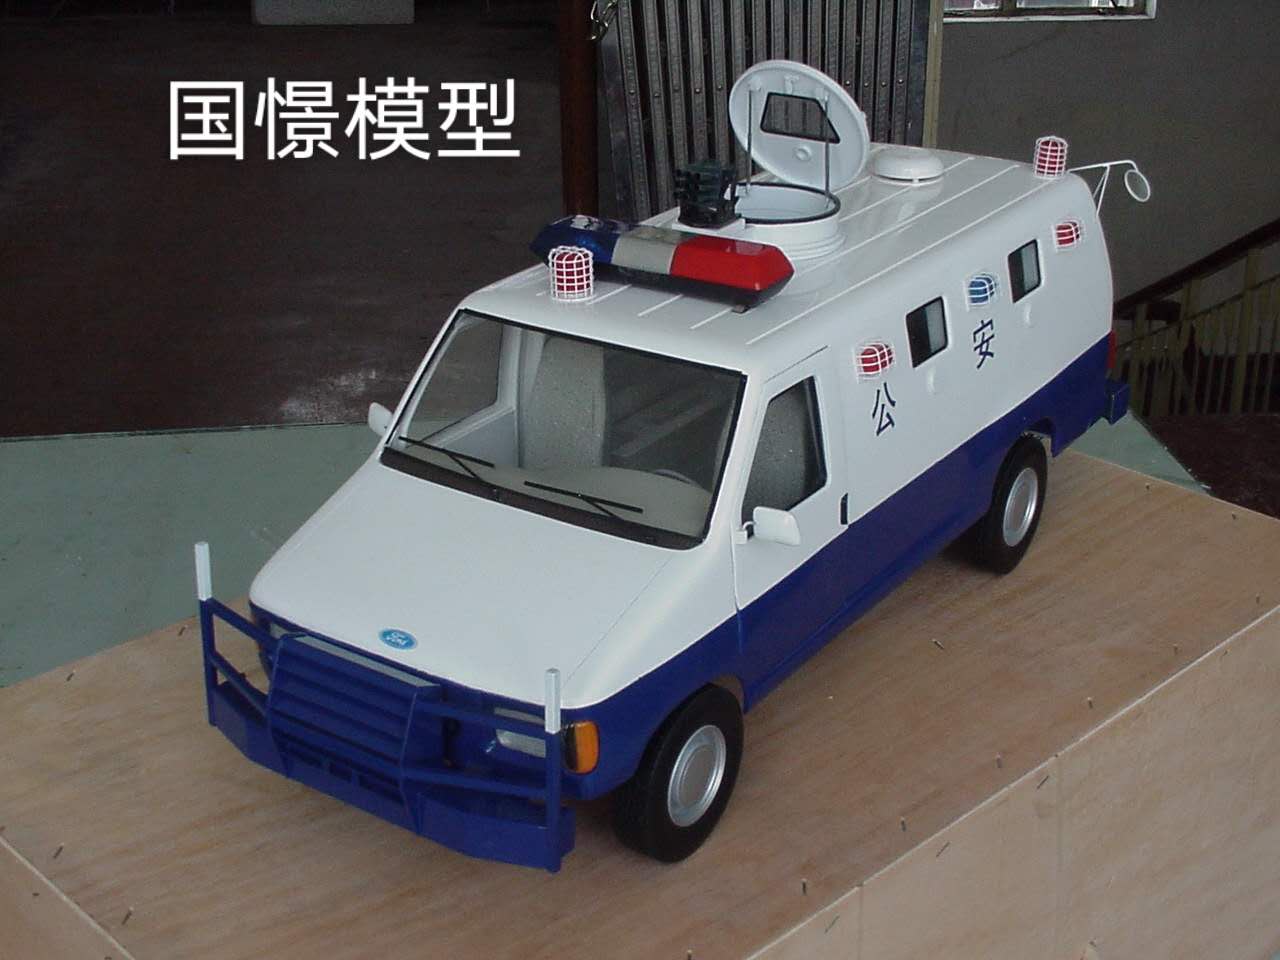 仙游县车辆模型